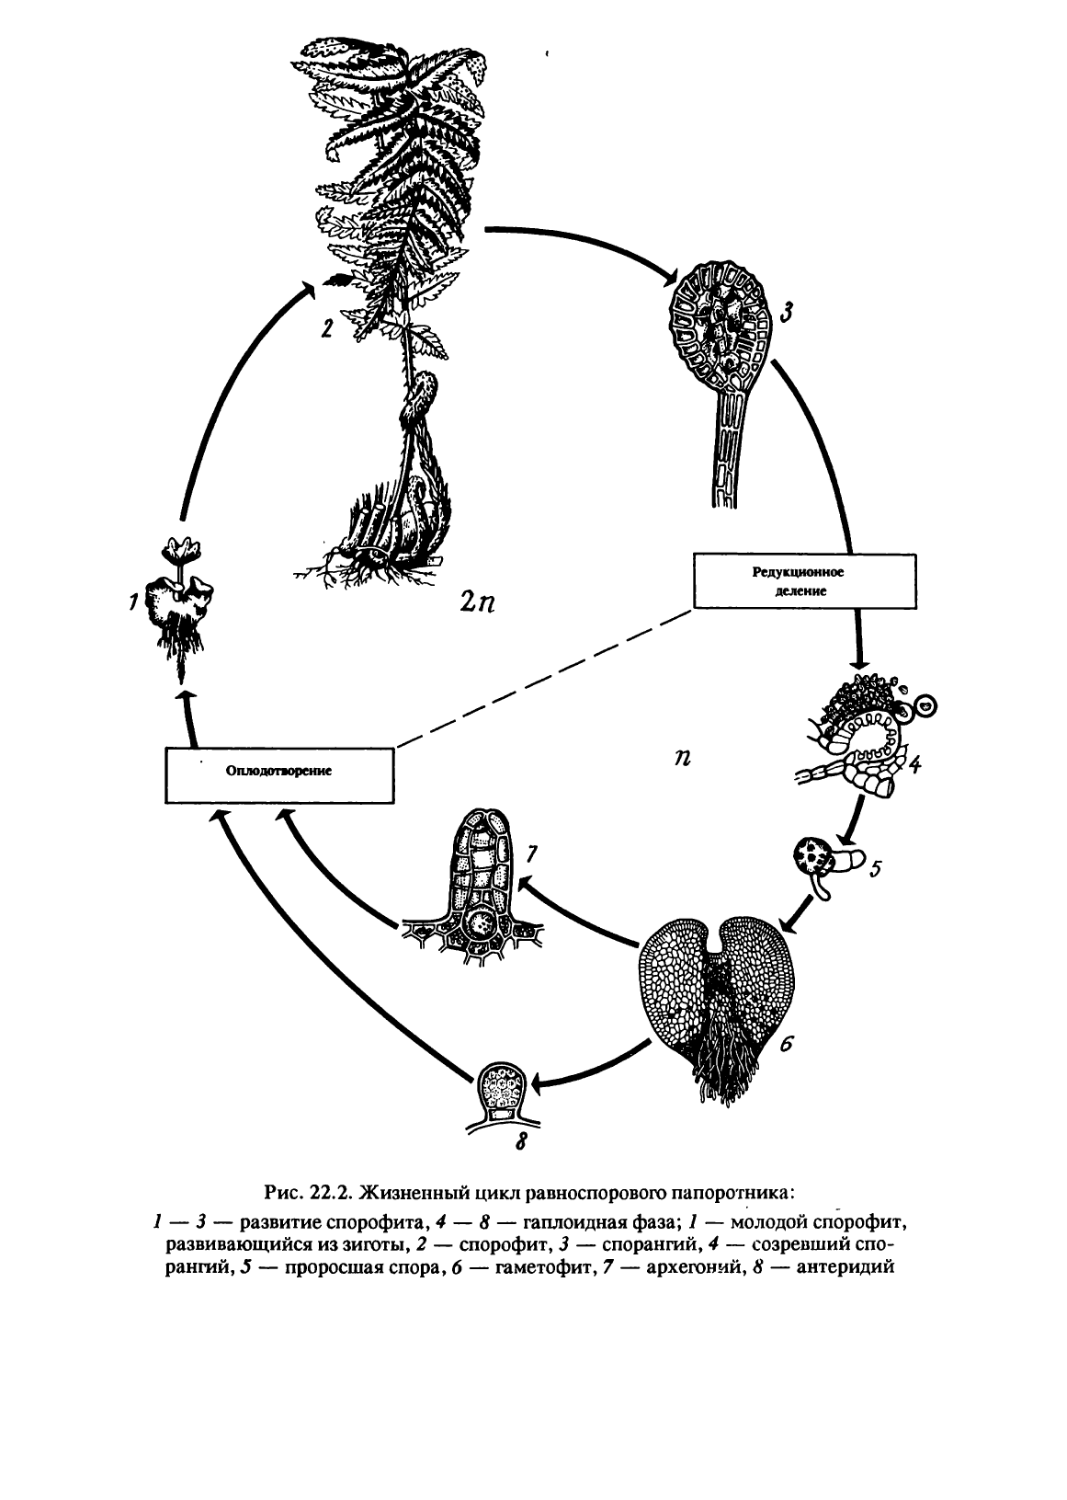 Жизненный цикл папоротника какое общее свойство. Жизненный цикл равноспорового папоротника. Жизненный цикл равноспорового папоротника схема. Жизненный цикл равноспорового папоротника мужского. Цикл воспроизведения разноспоровых папоротников.